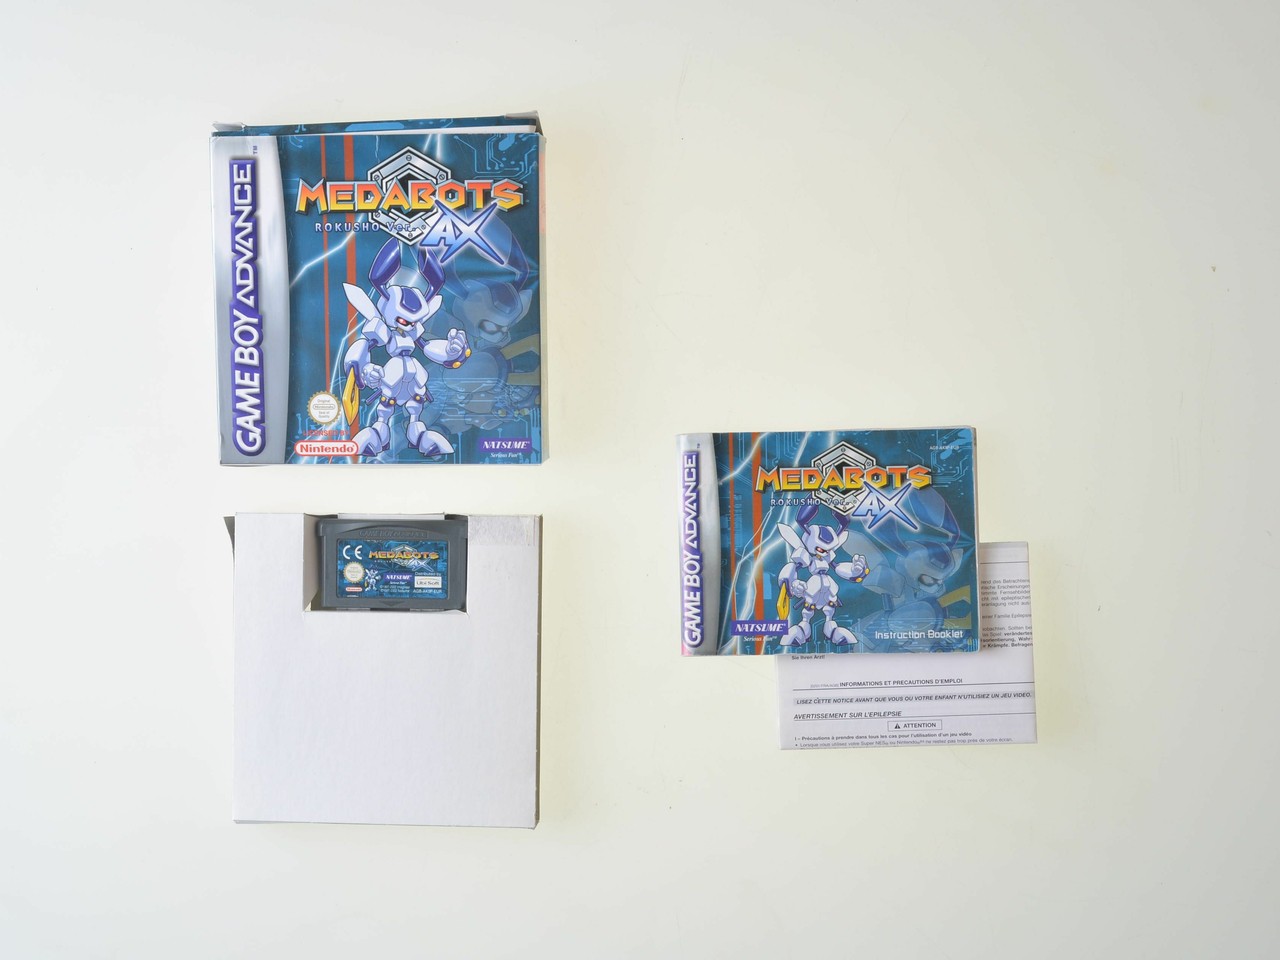 Medabots Rokusho AX (Blue) - Gameboy Advance Games [Complete]